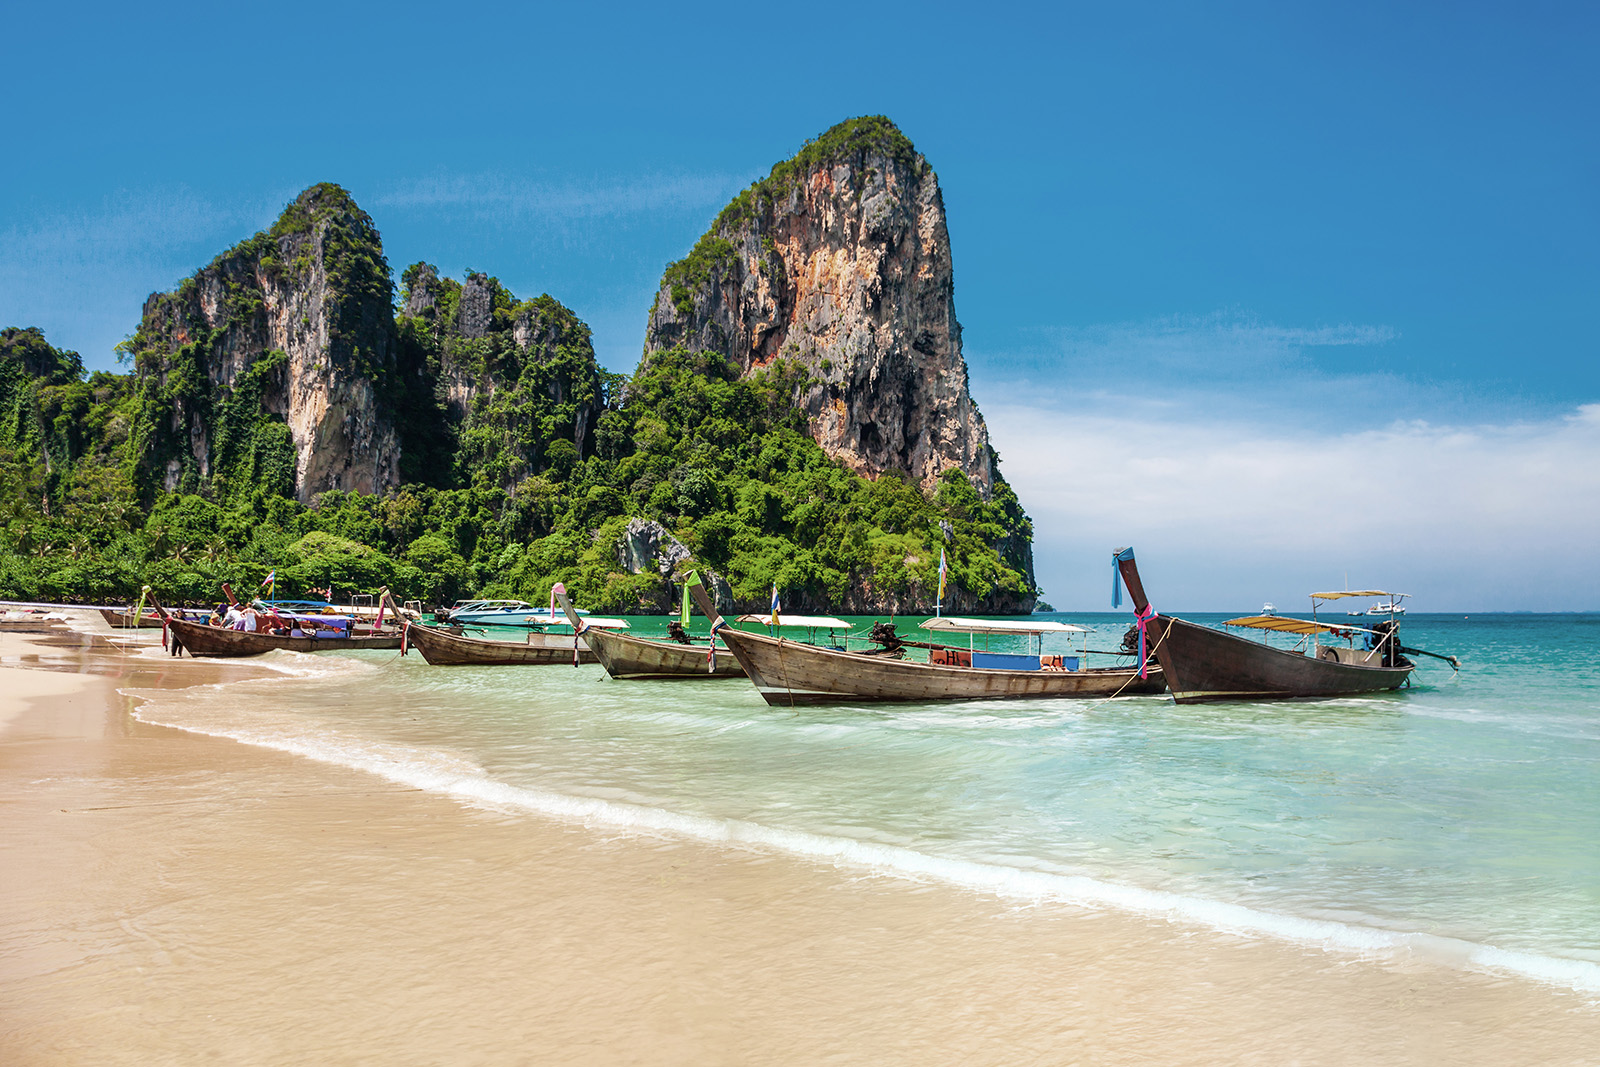 Strand in Thailand mit Booten, Felsen und kristallklarem Wasser, Pauschalreise nach Thailand